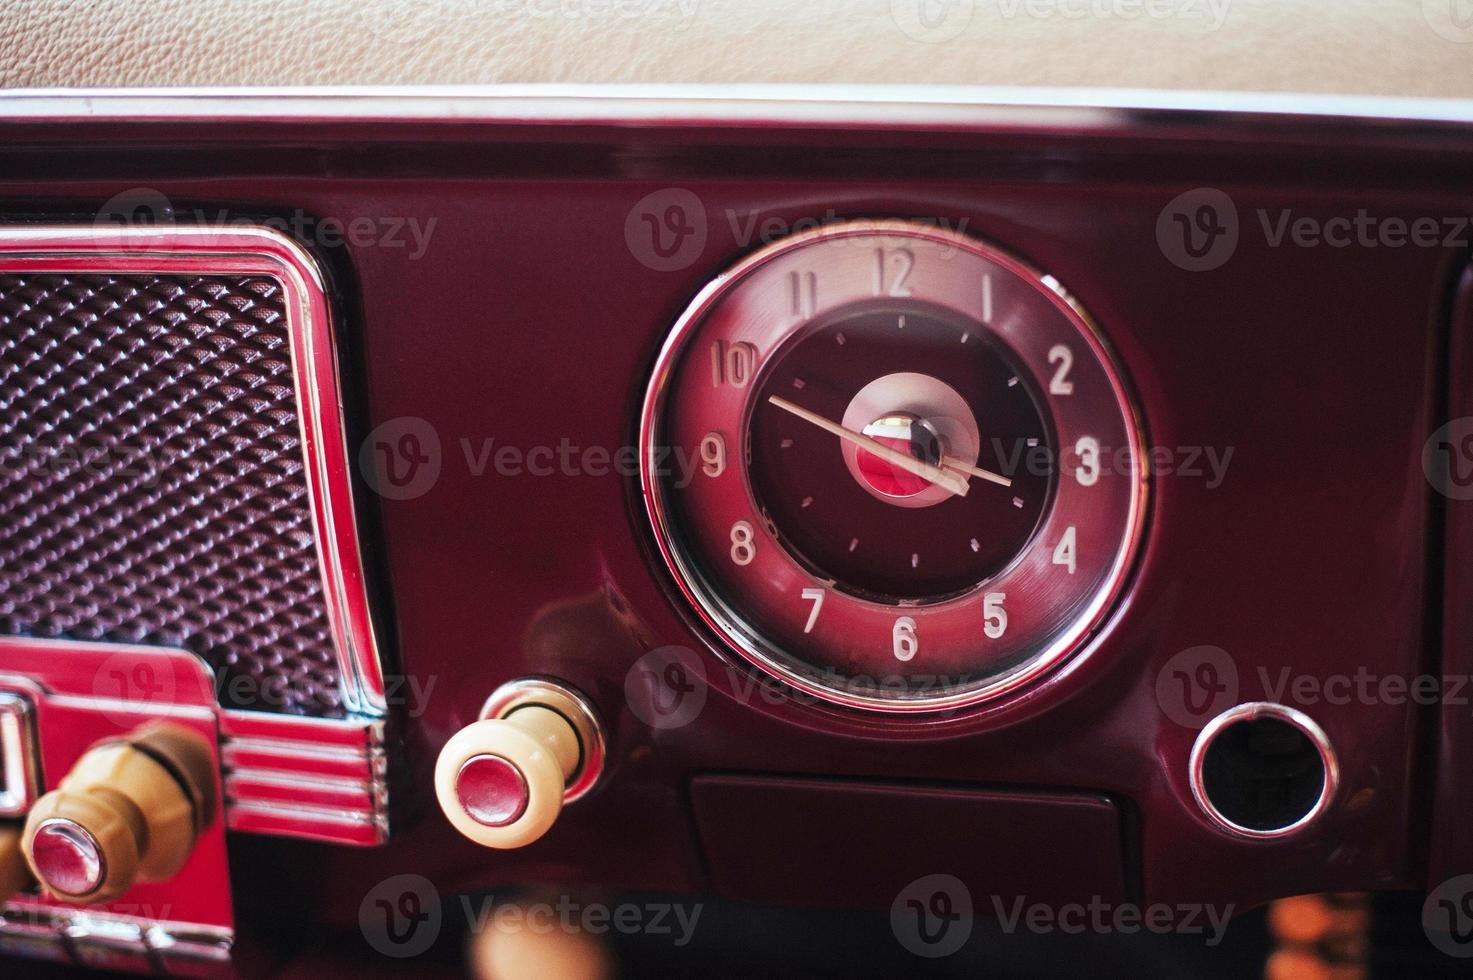 radio dans le tableau de bord à l'intérieur de la vieille automobile vintage. photo